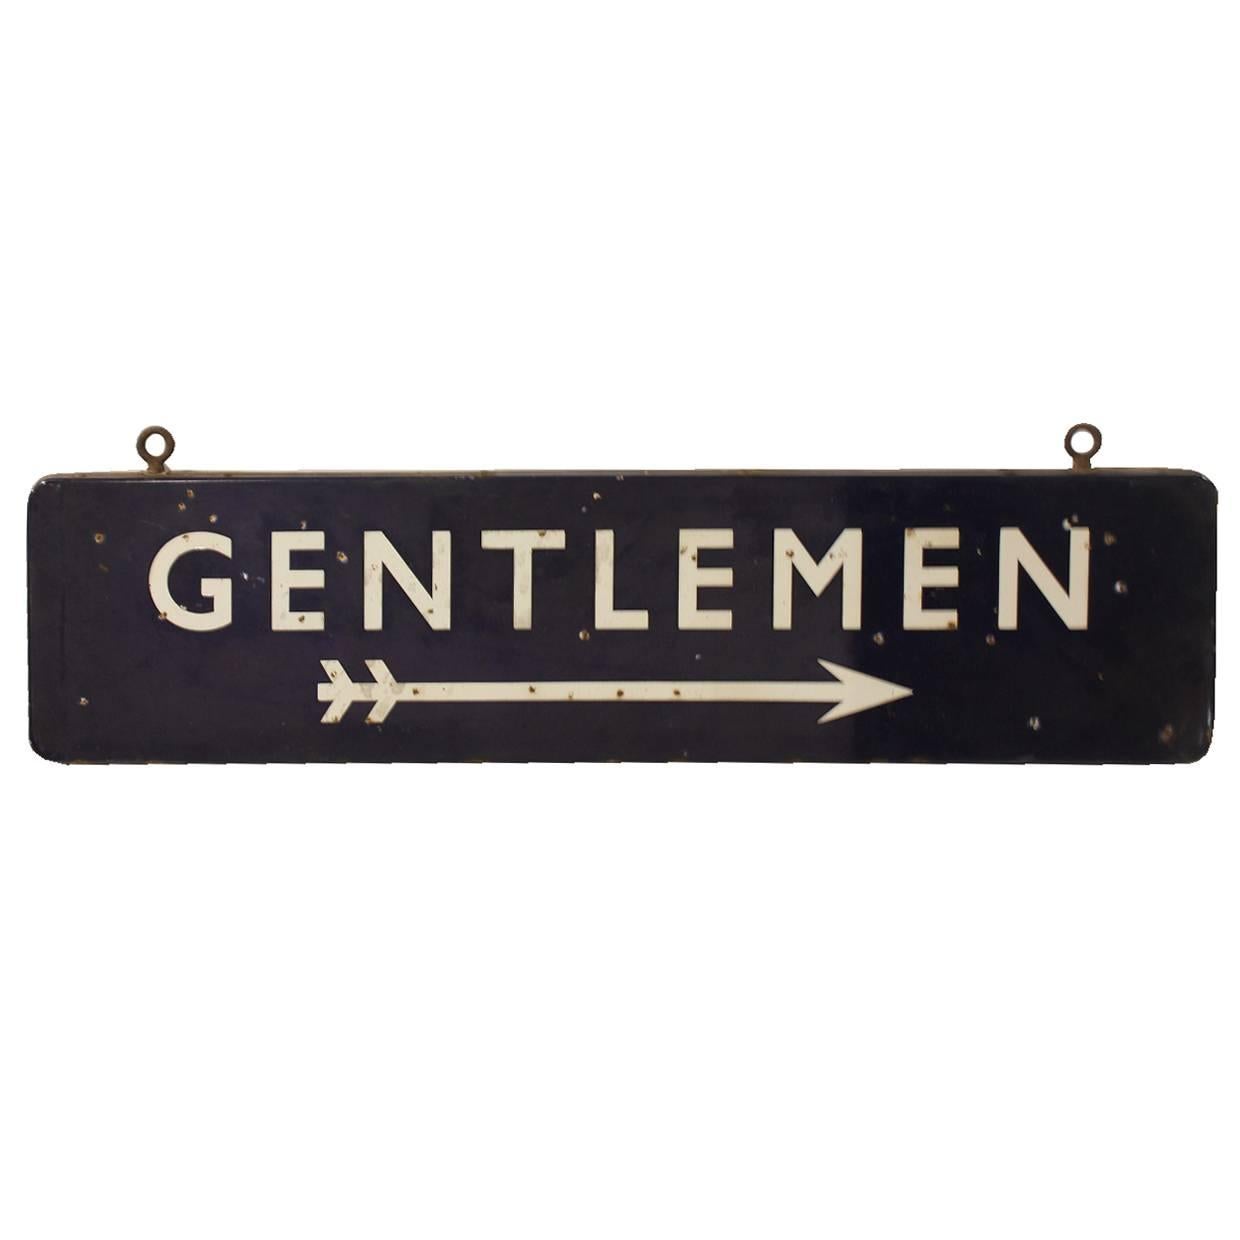 Vintage Double-Sided Porcelain Tran Station Sign "Gentlemen"